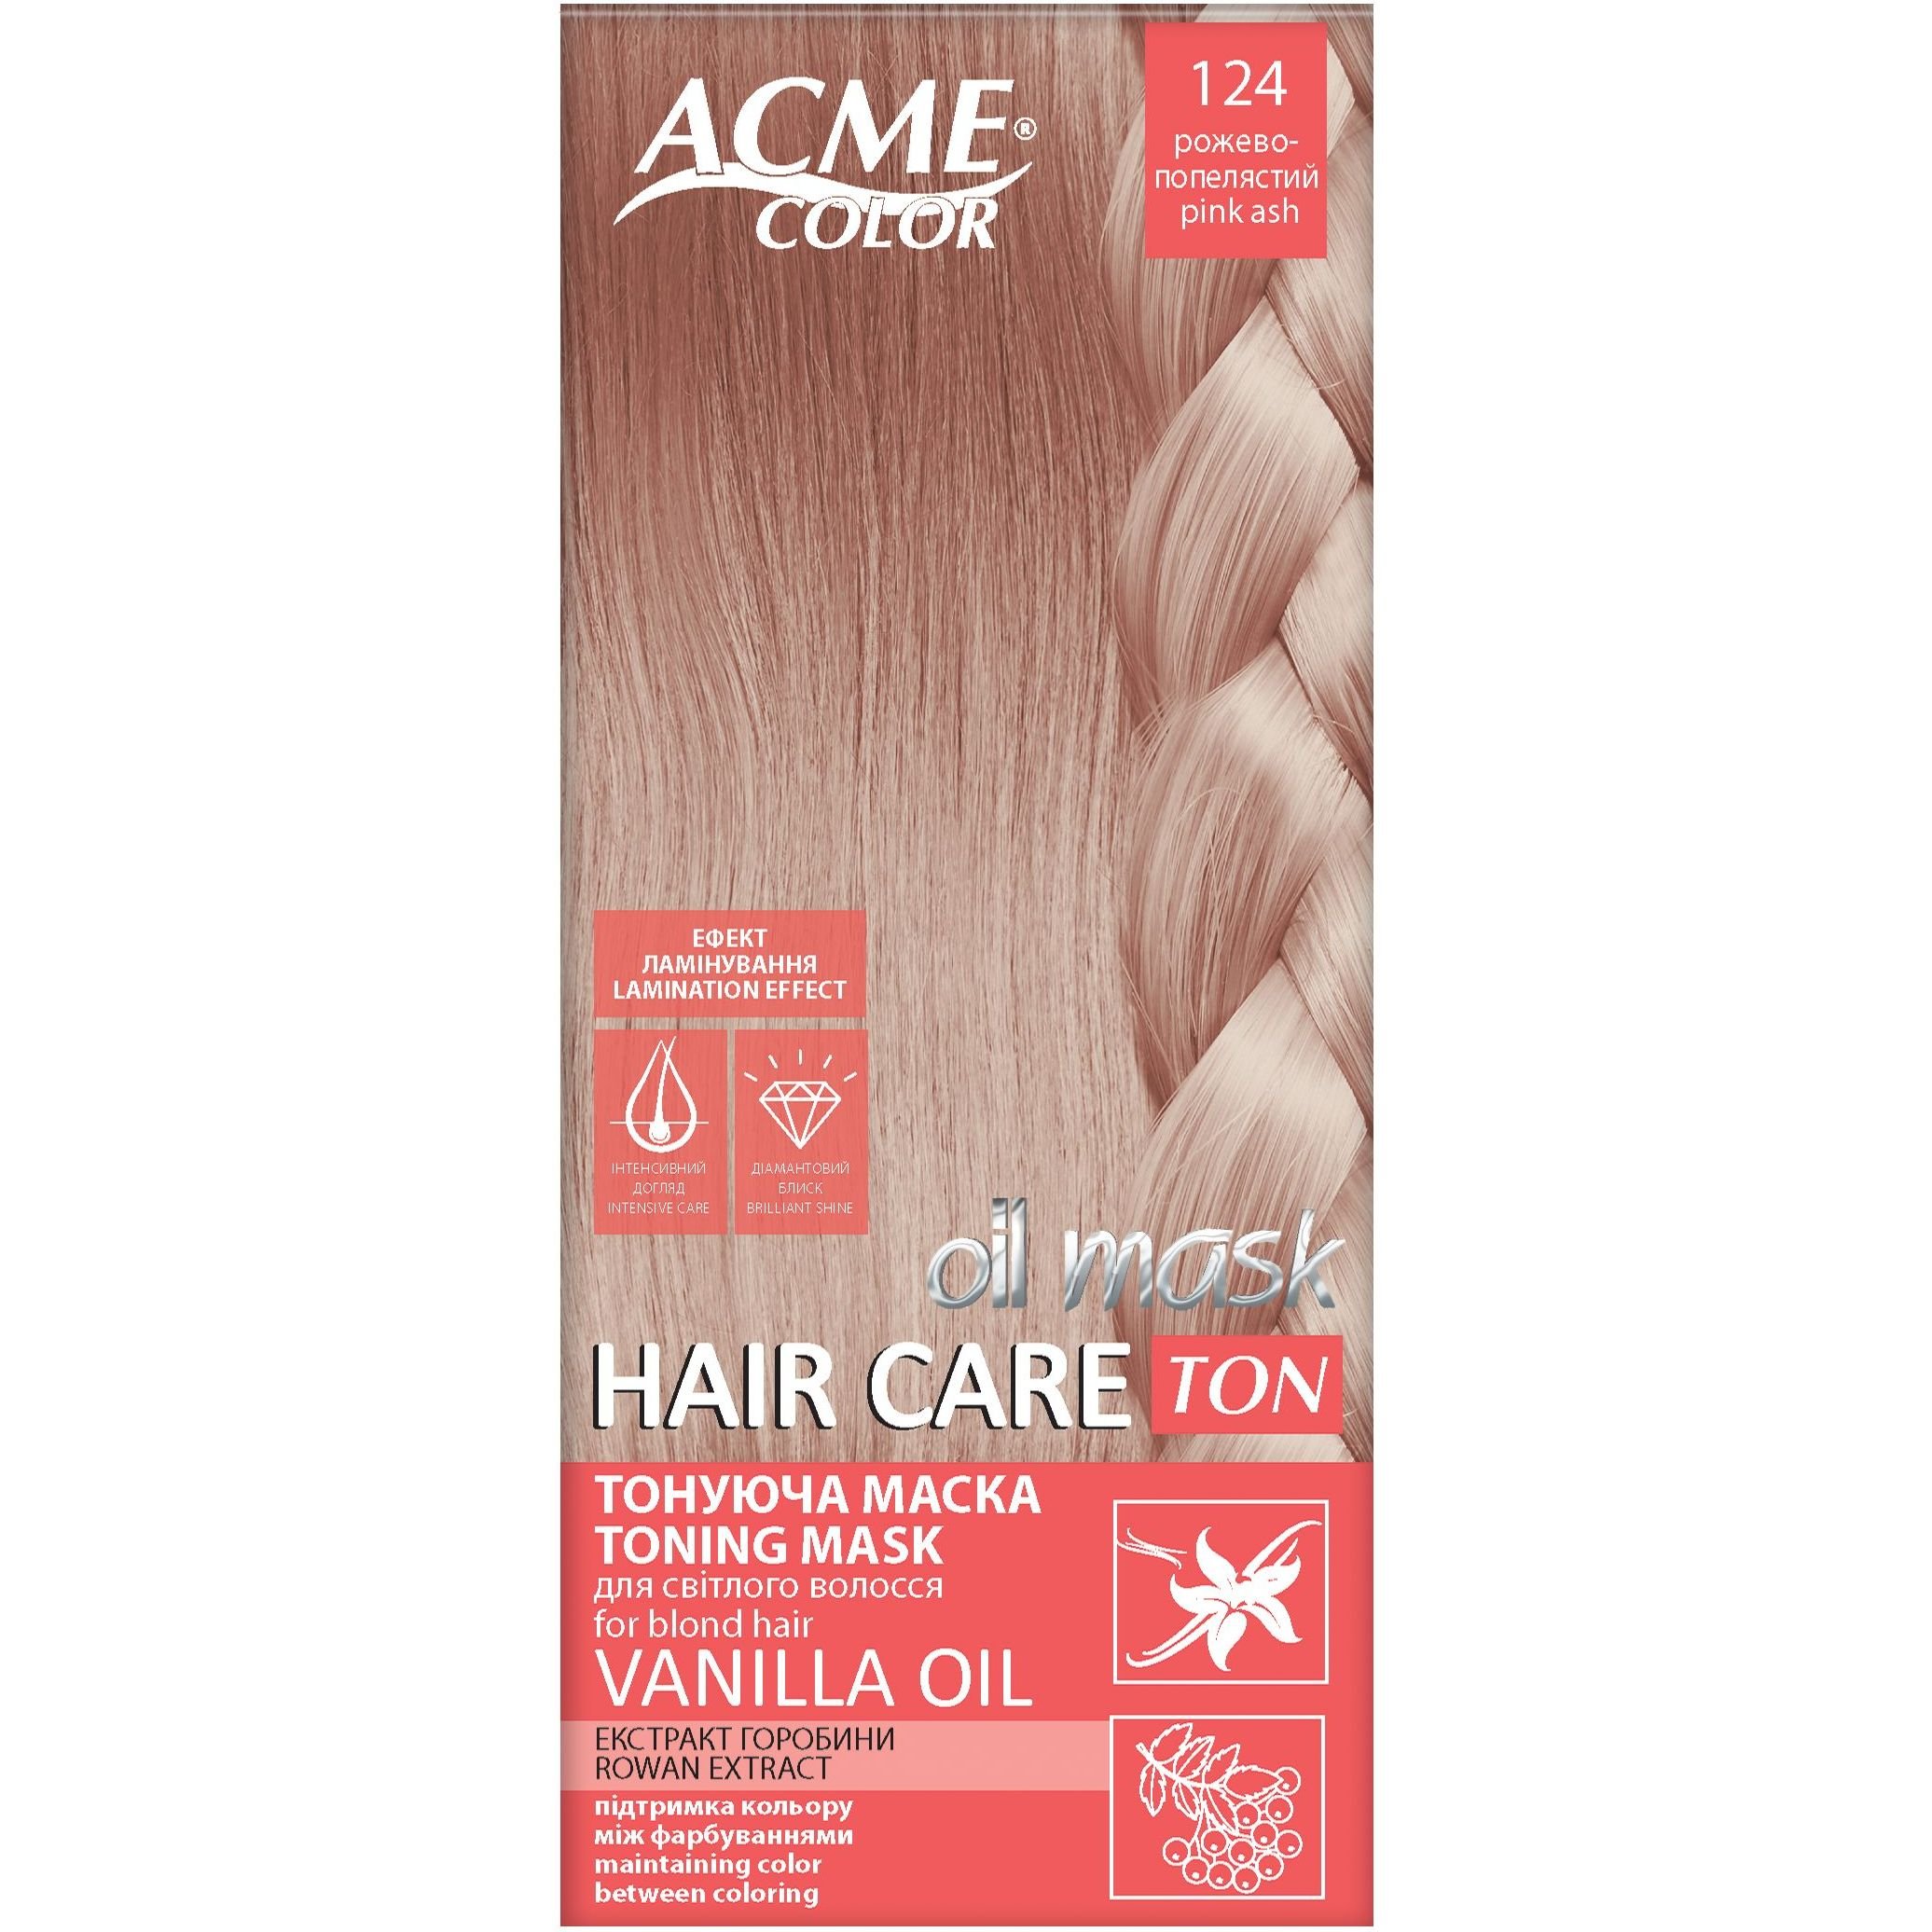 Тонуюча маска для волосся Acme Color Hair Care Ton oil mask, відтінок 124, рожево-попелястий, 30 мл - фото 1